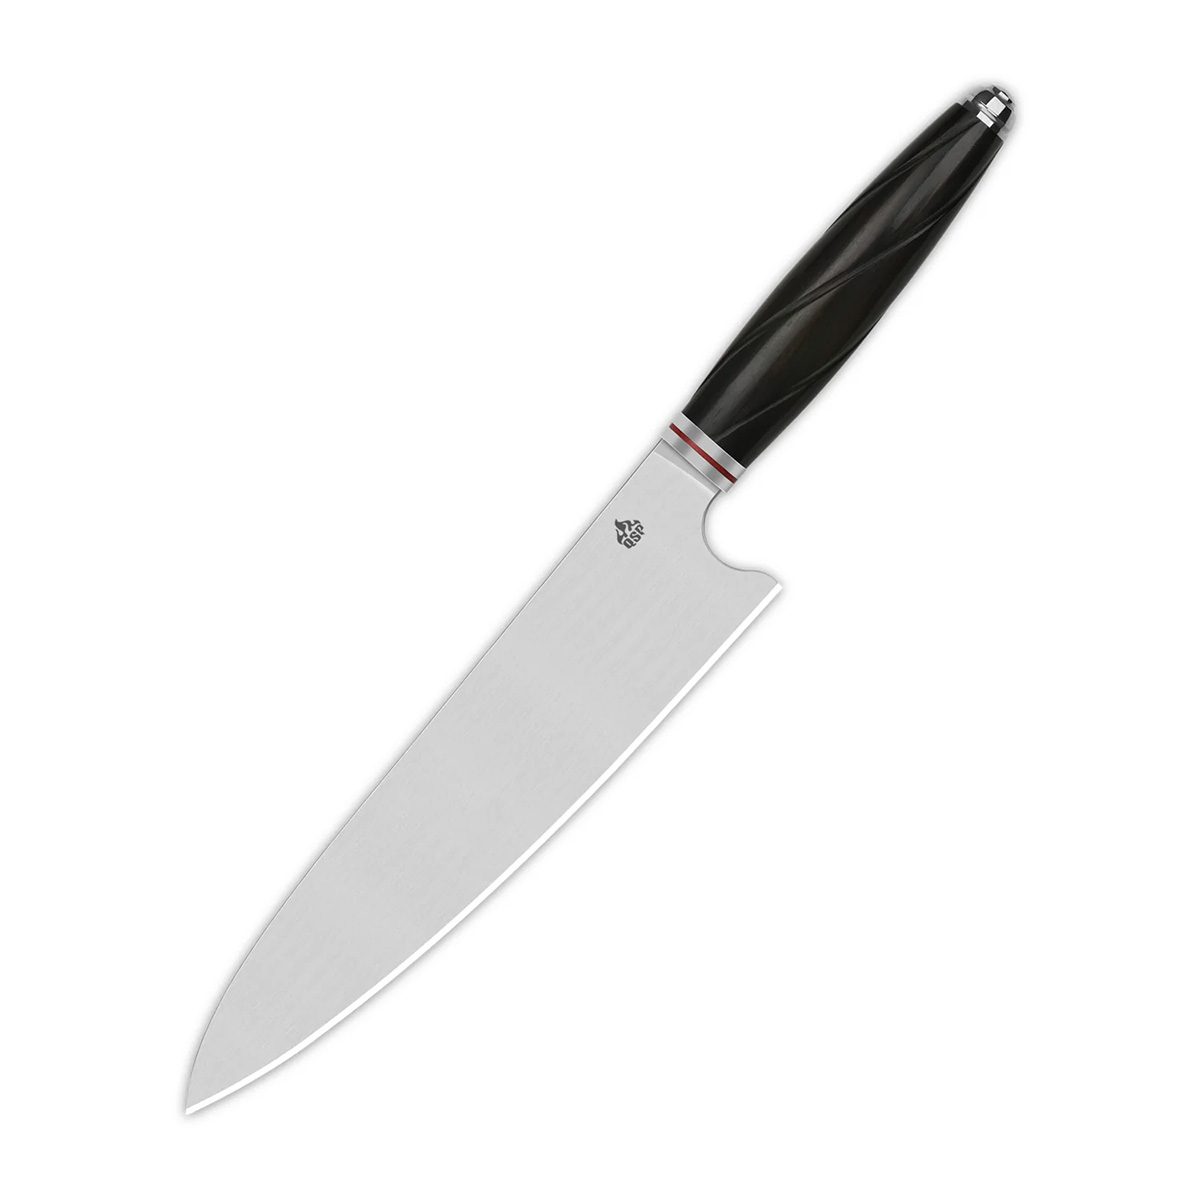 Поварской кухонный шеф нож QSP Mulan Series, сталь Sandvik 14C28N, рукоять эбеновое дерево - фото 1